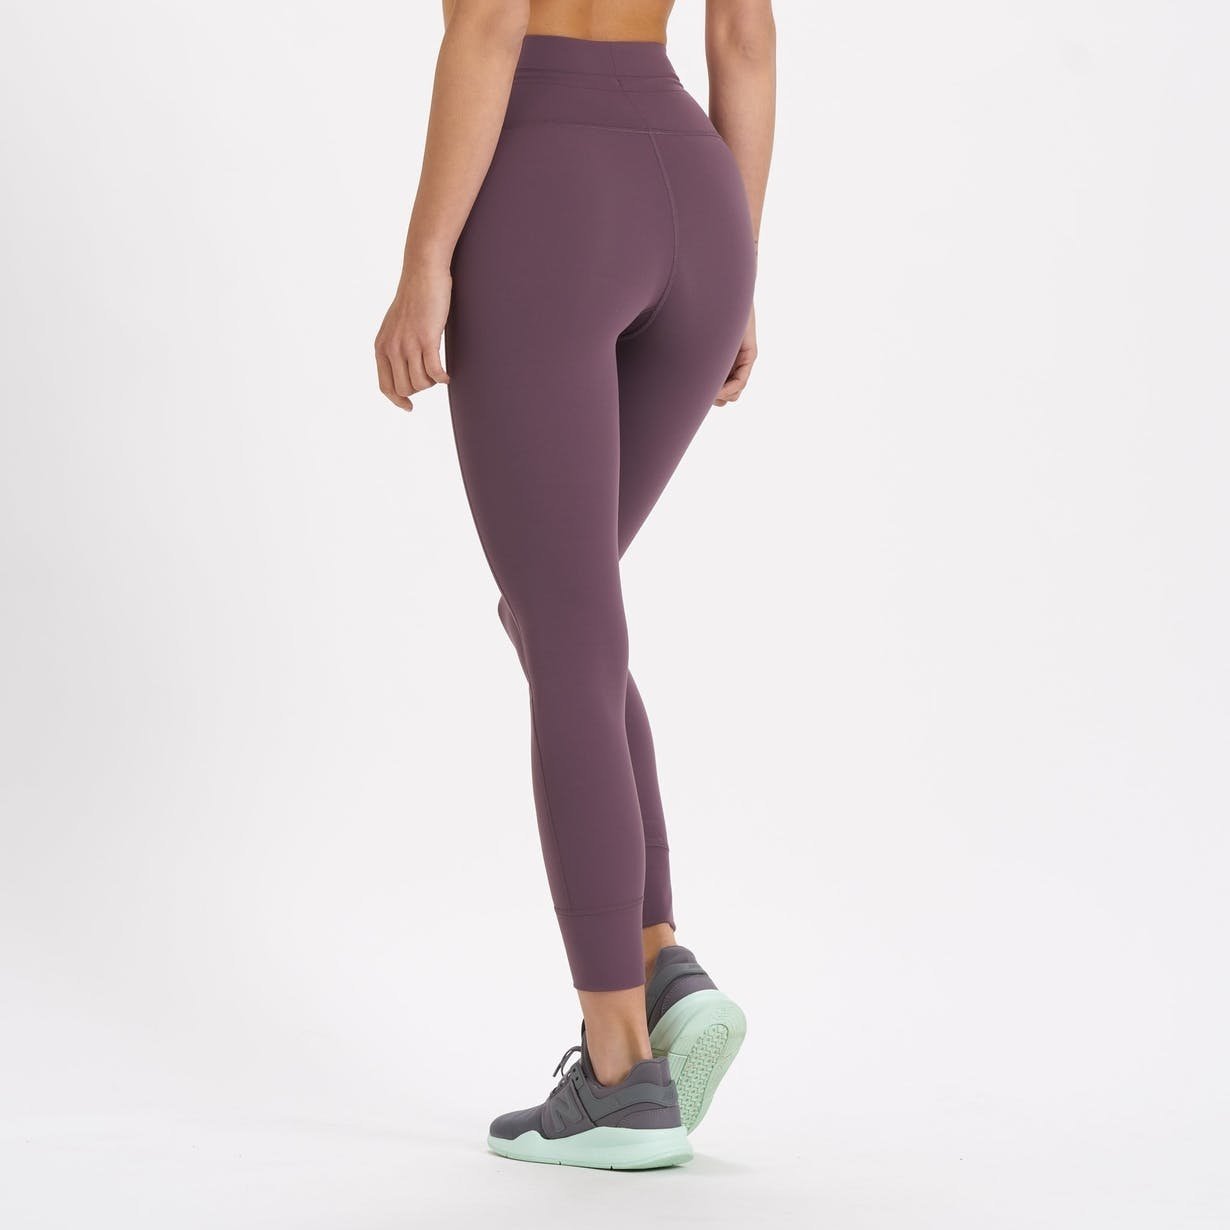 Vuori: Our softest leggings in a brand new color